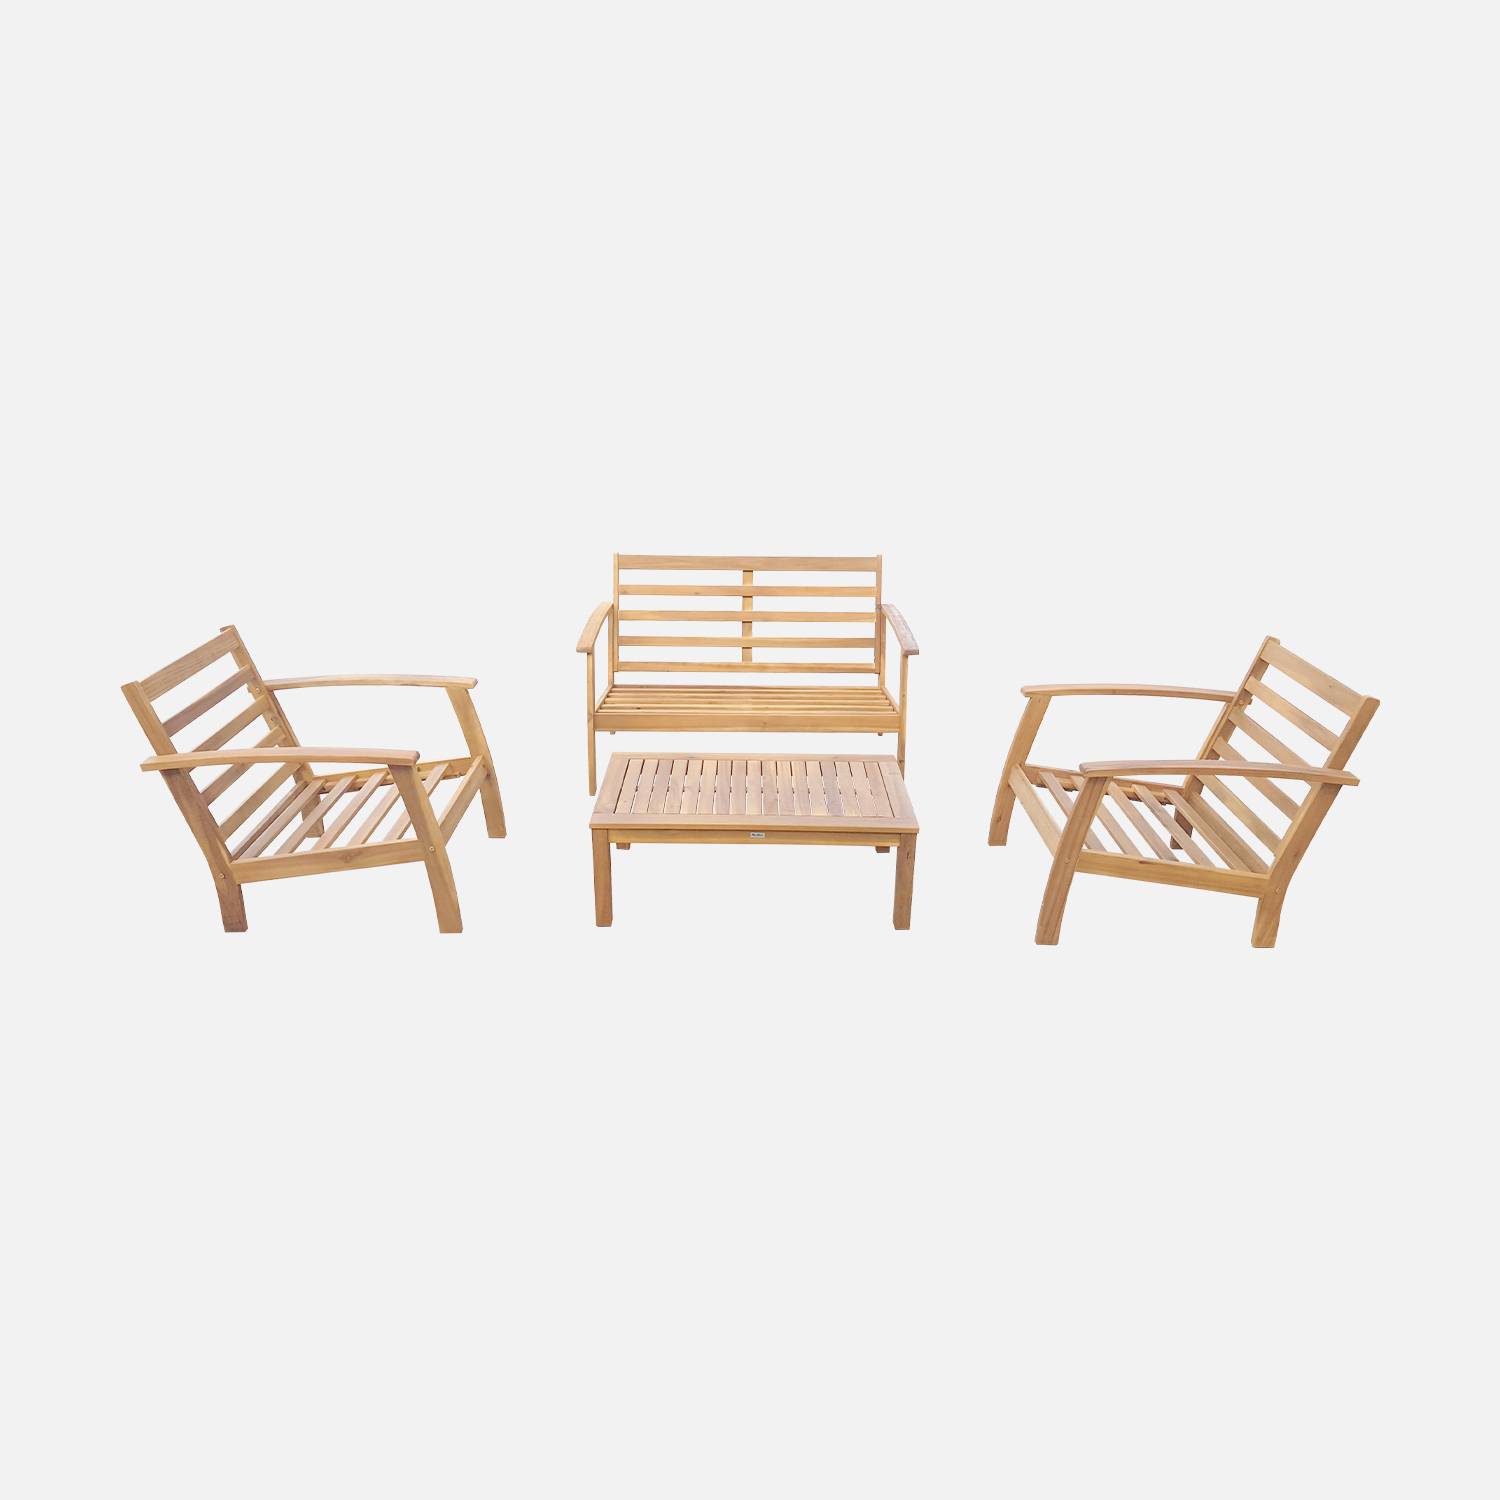 Mobília de 4 lugares em madeira para jardim - Ushuaïa - Almofadas terra cota, sofá, poltronas e mesa de centro em acácia, design  Photo7